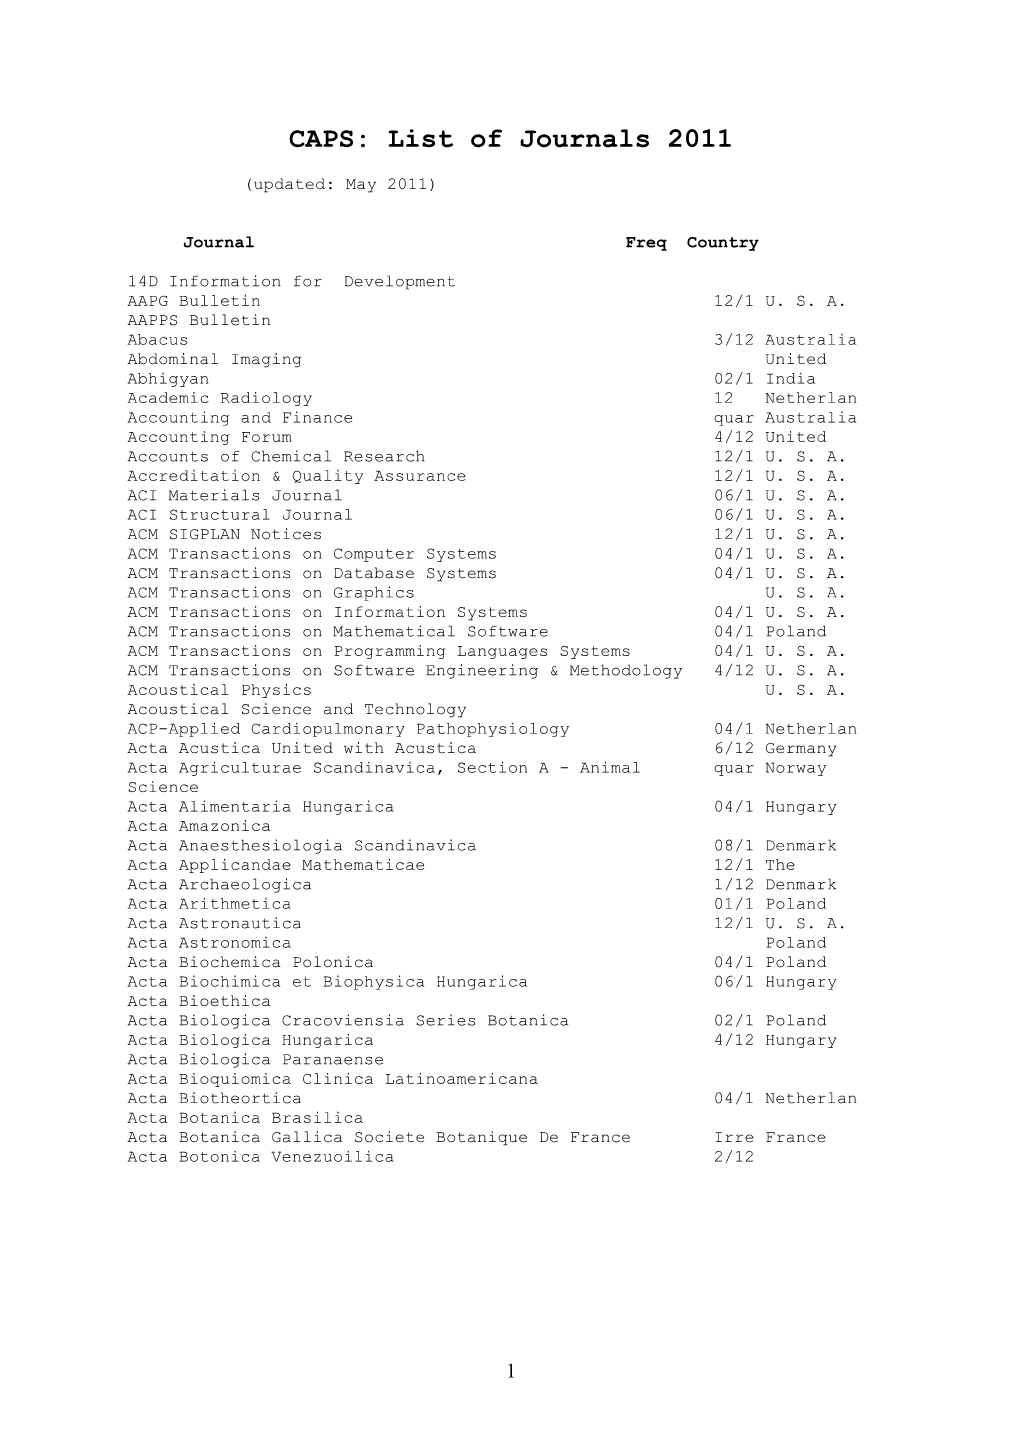 CAPS: List of Journals 2008 s1